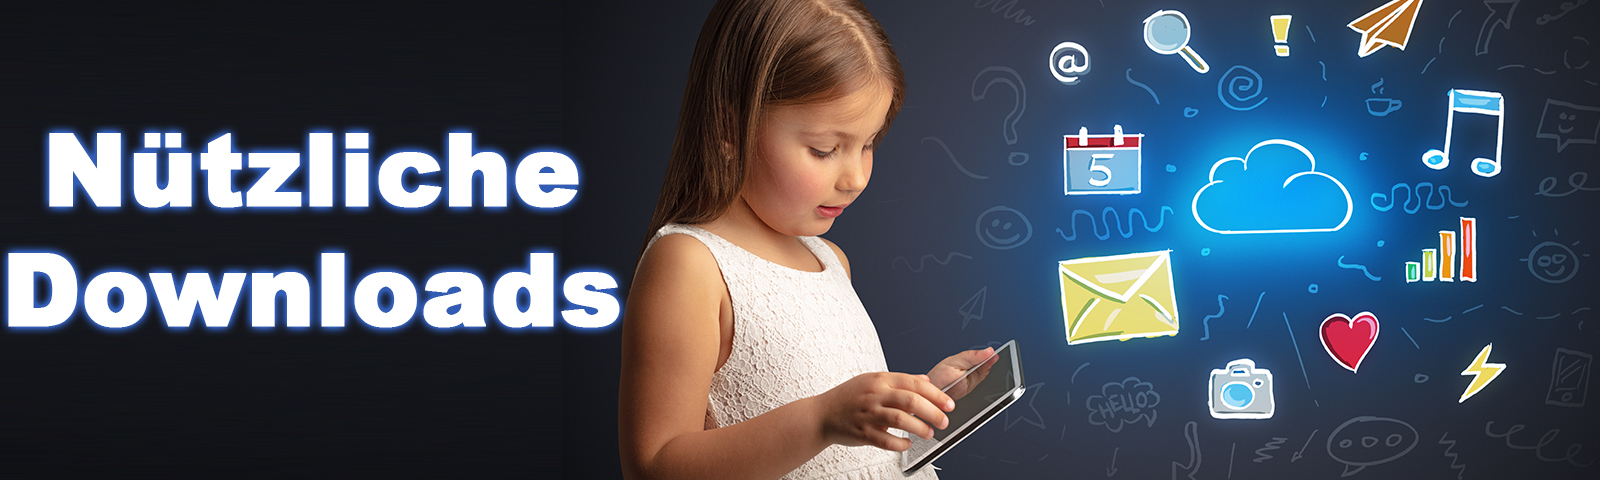 Kind mit Tablet im digitalen Kosmos